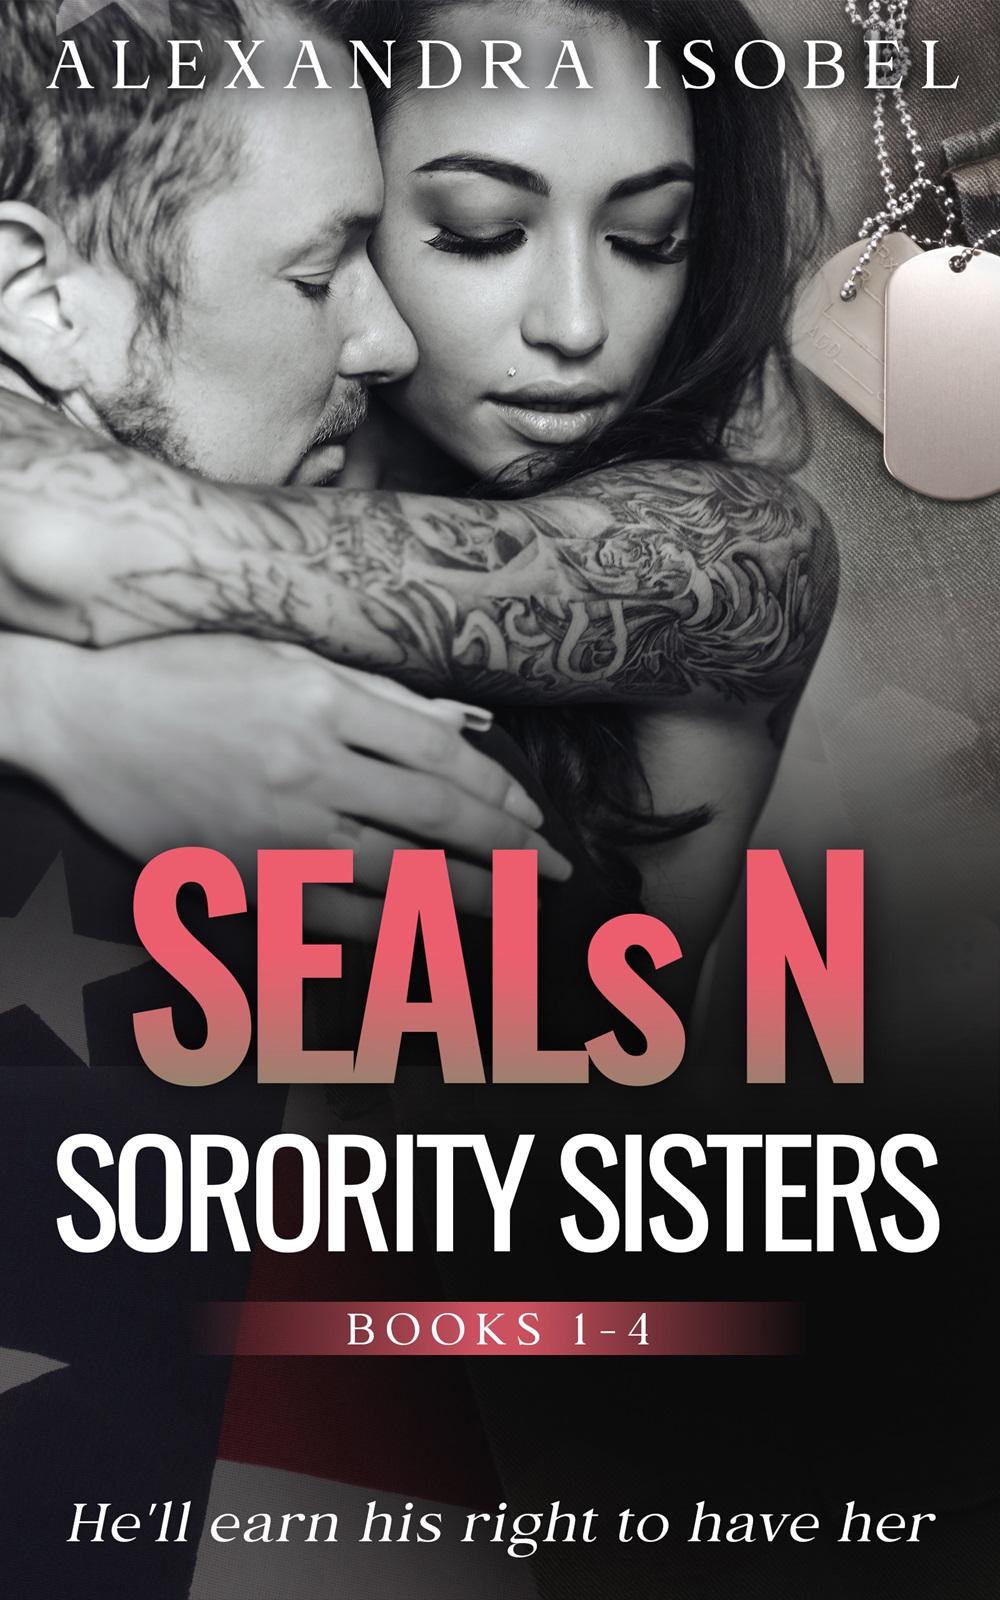 SEALs N Sorority Sisters by Alexandra Isobel, 1-June-2022